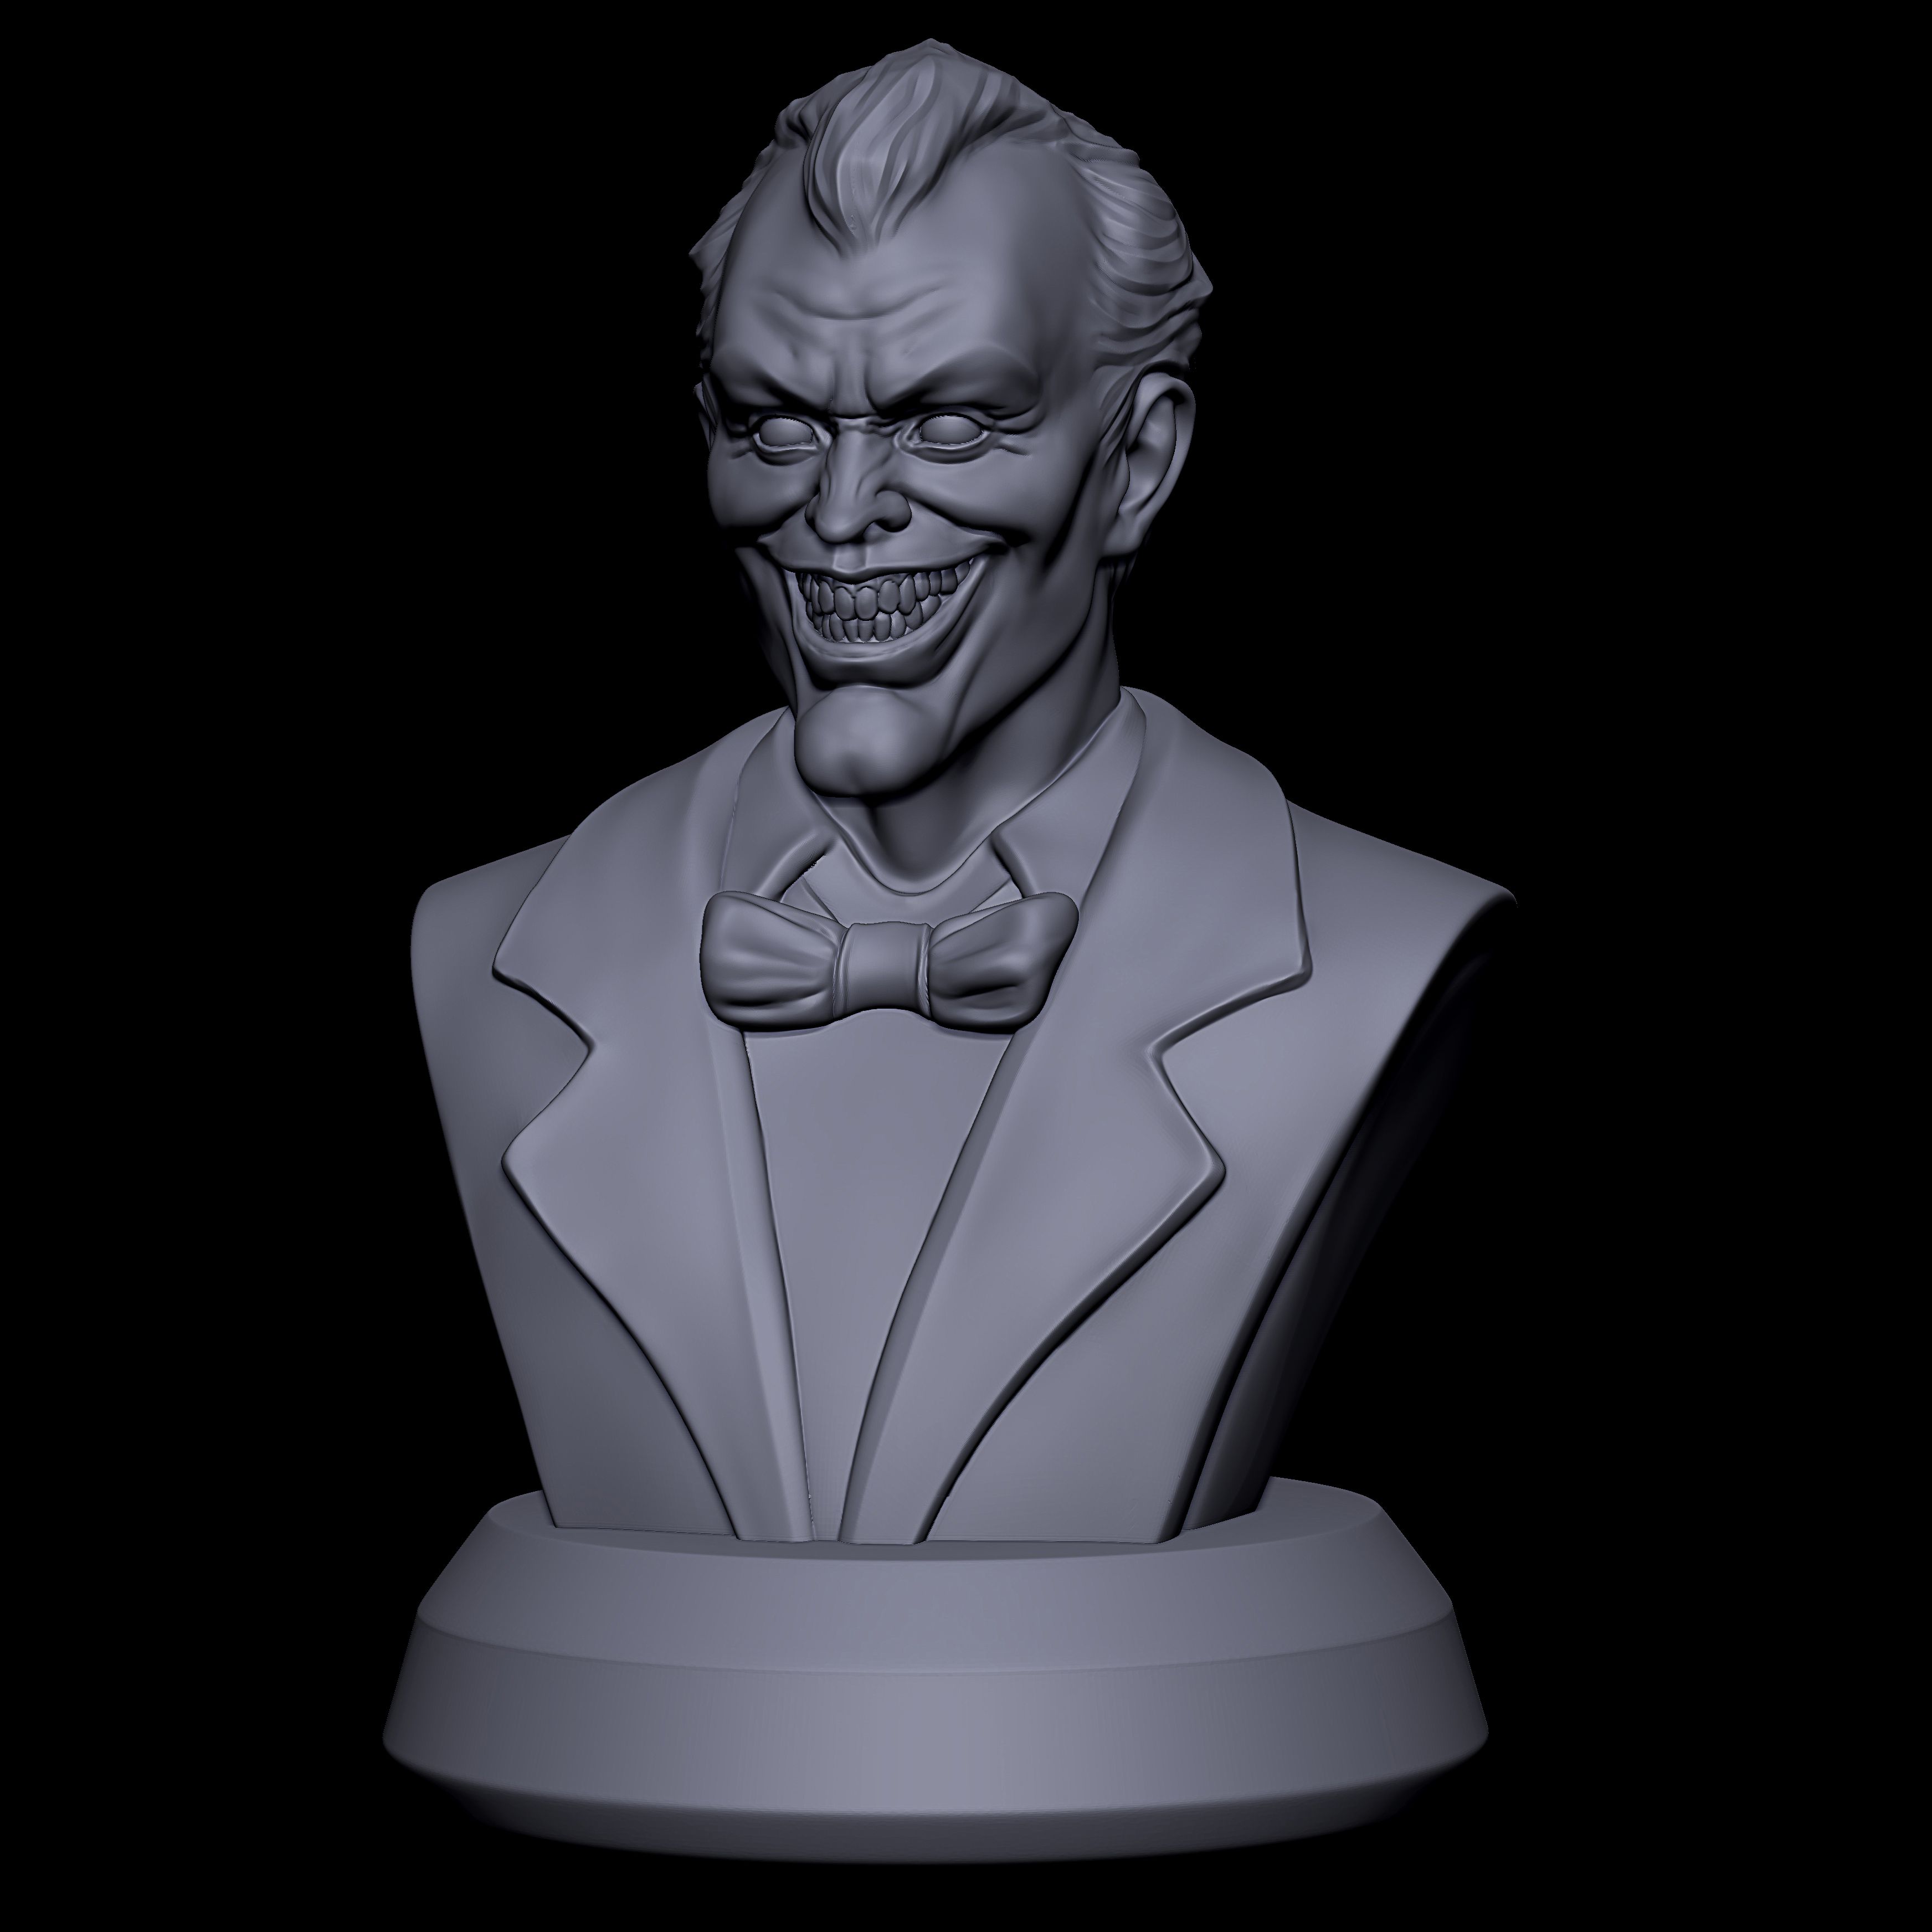 Download OBJ file Joker • 3D print object ・ Cults